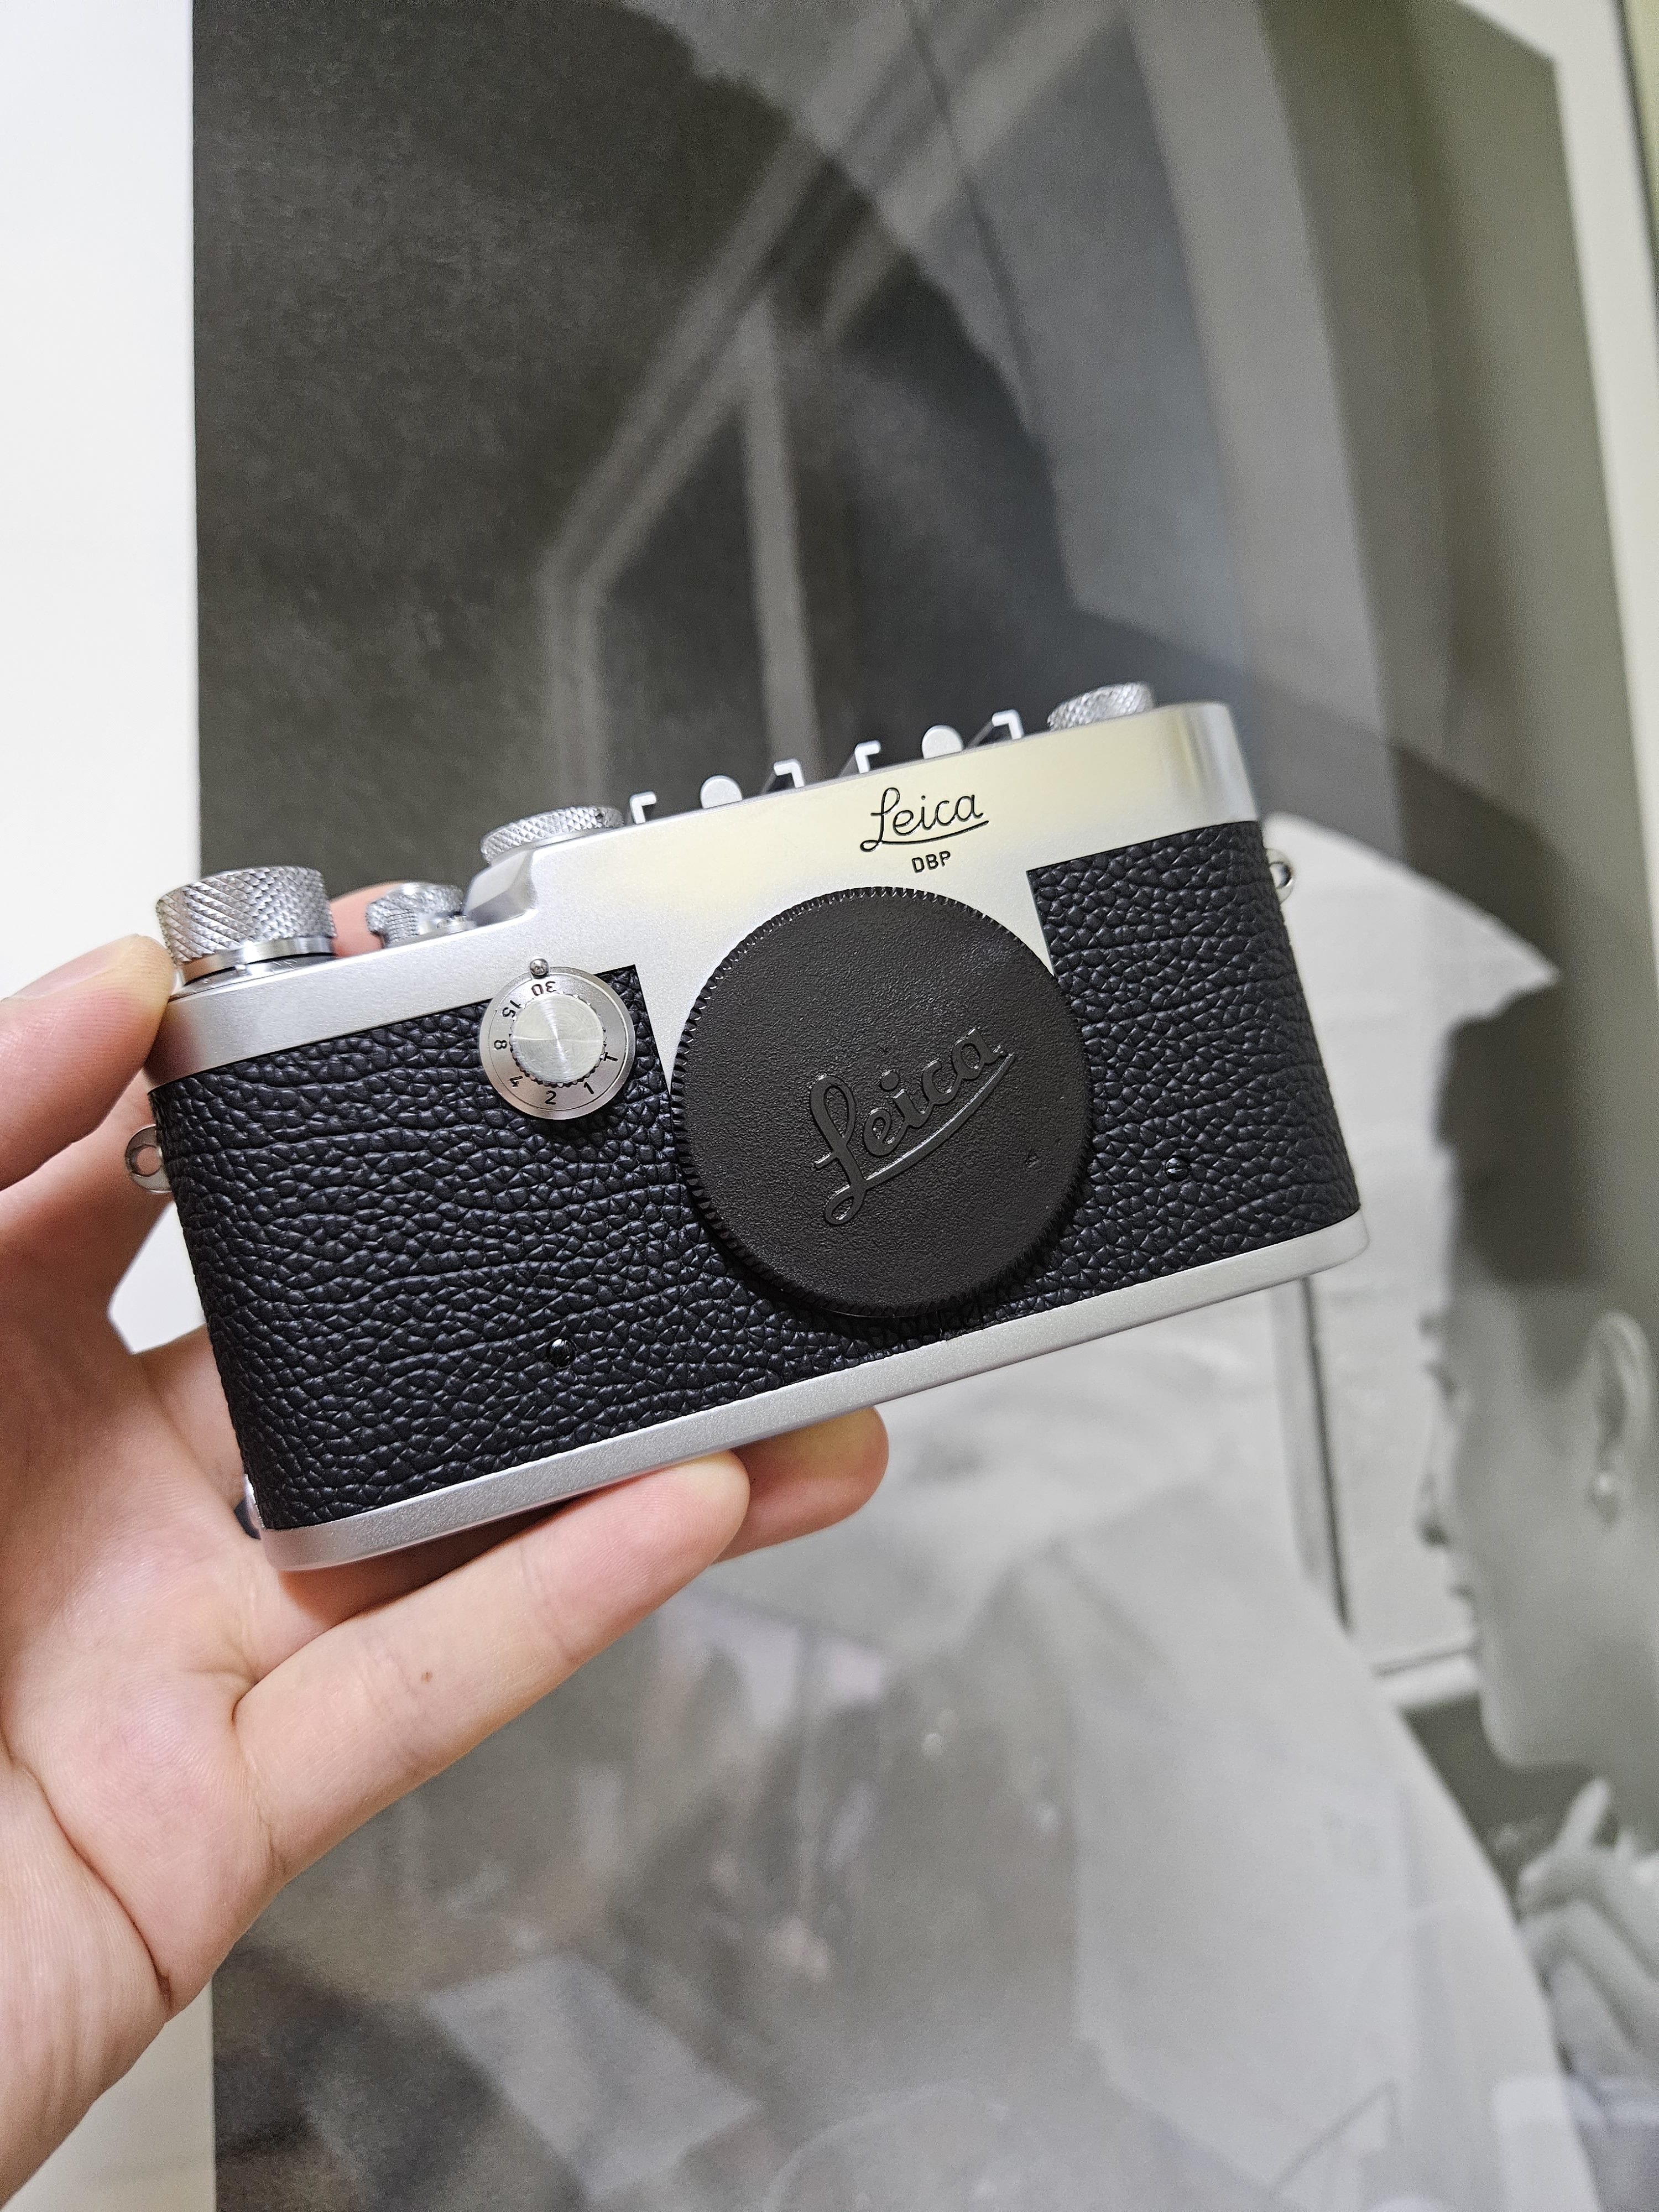 Leica Ig reskinned